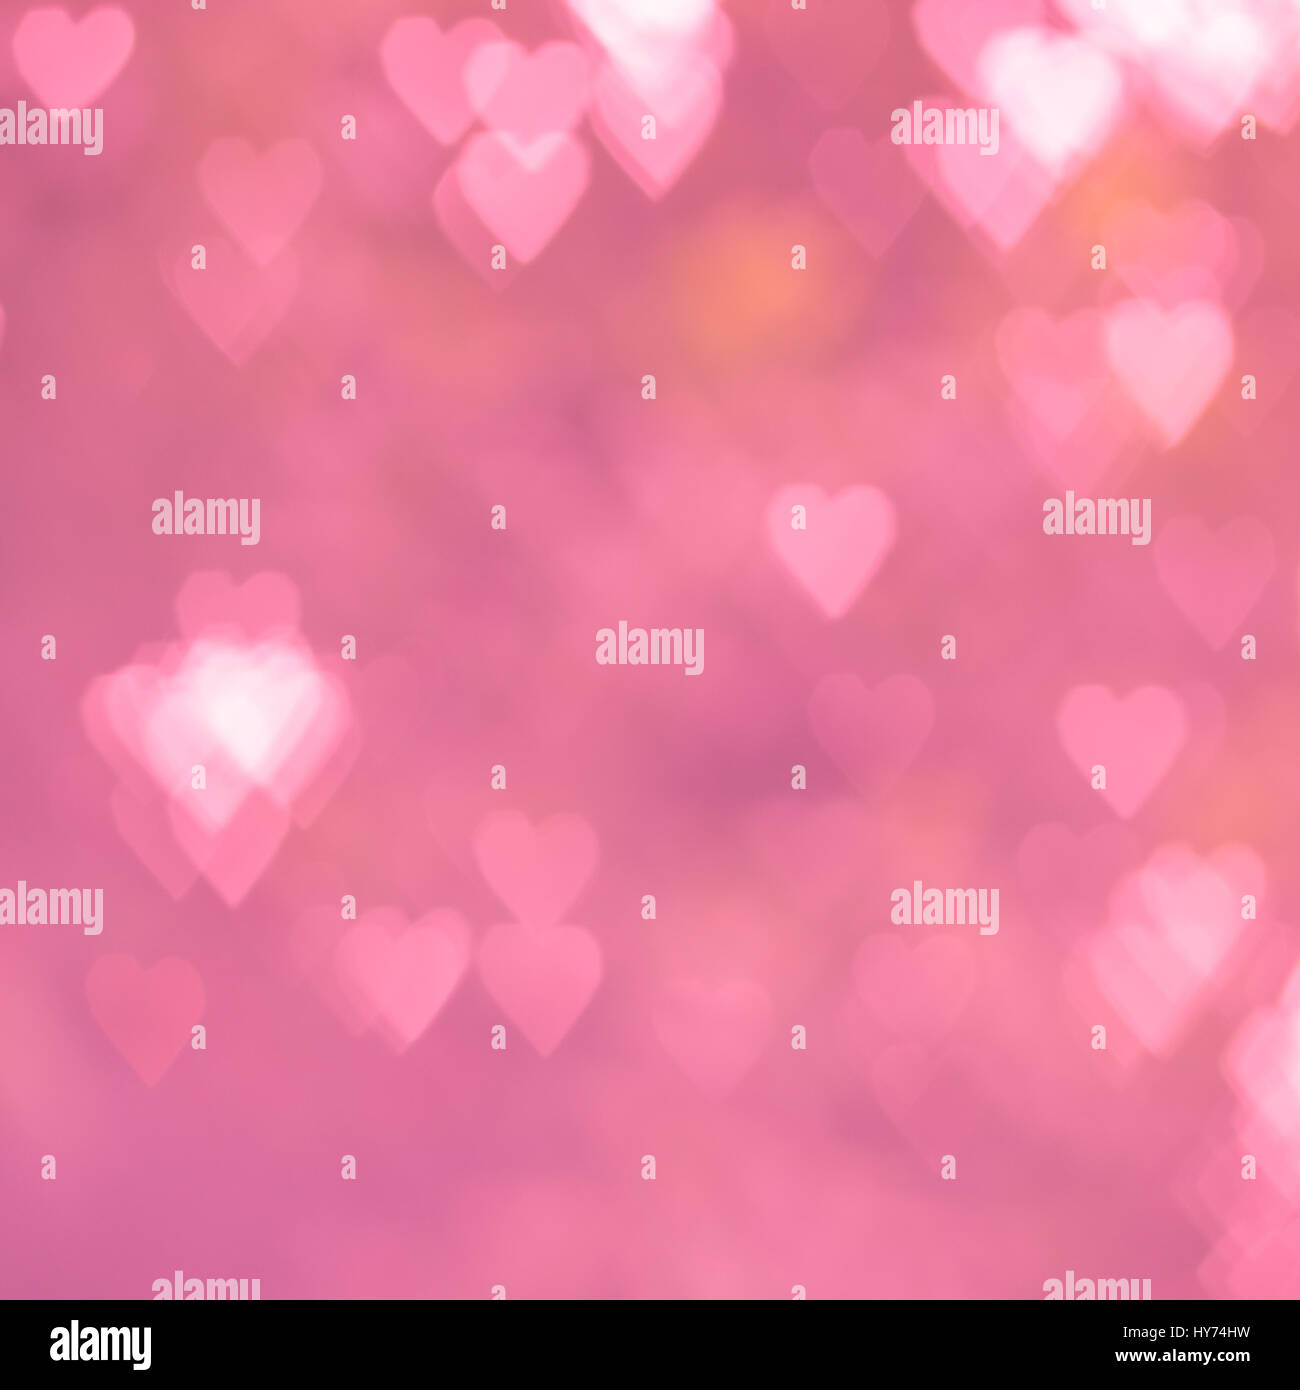 Fondo de pantalla de amor rosa fotografías e imágenes de alta resolución -  Alamy